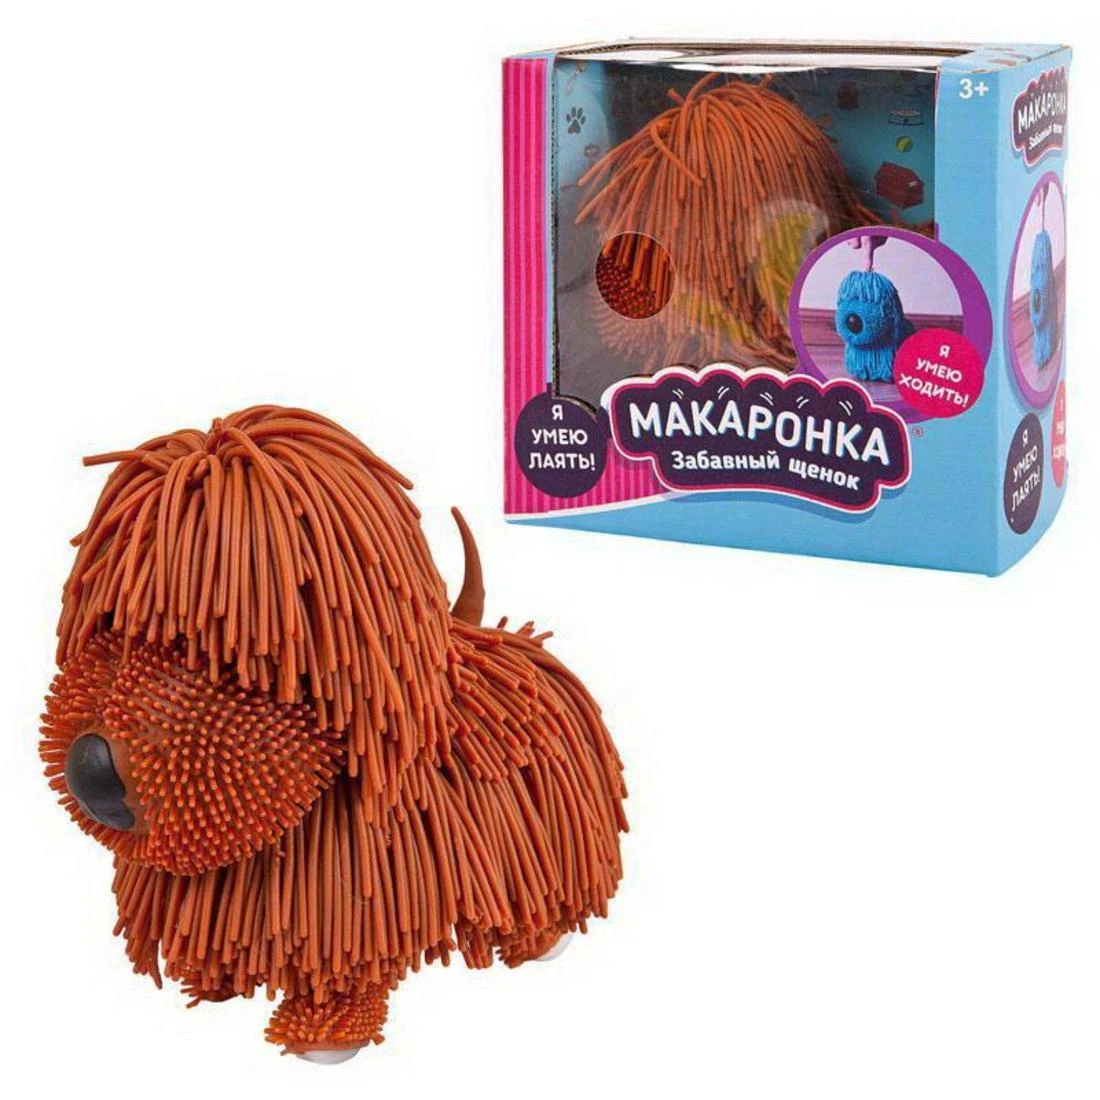 Интерактивная игрушка Макаронка Собака коричневая ходит, звуковые и музыкальные